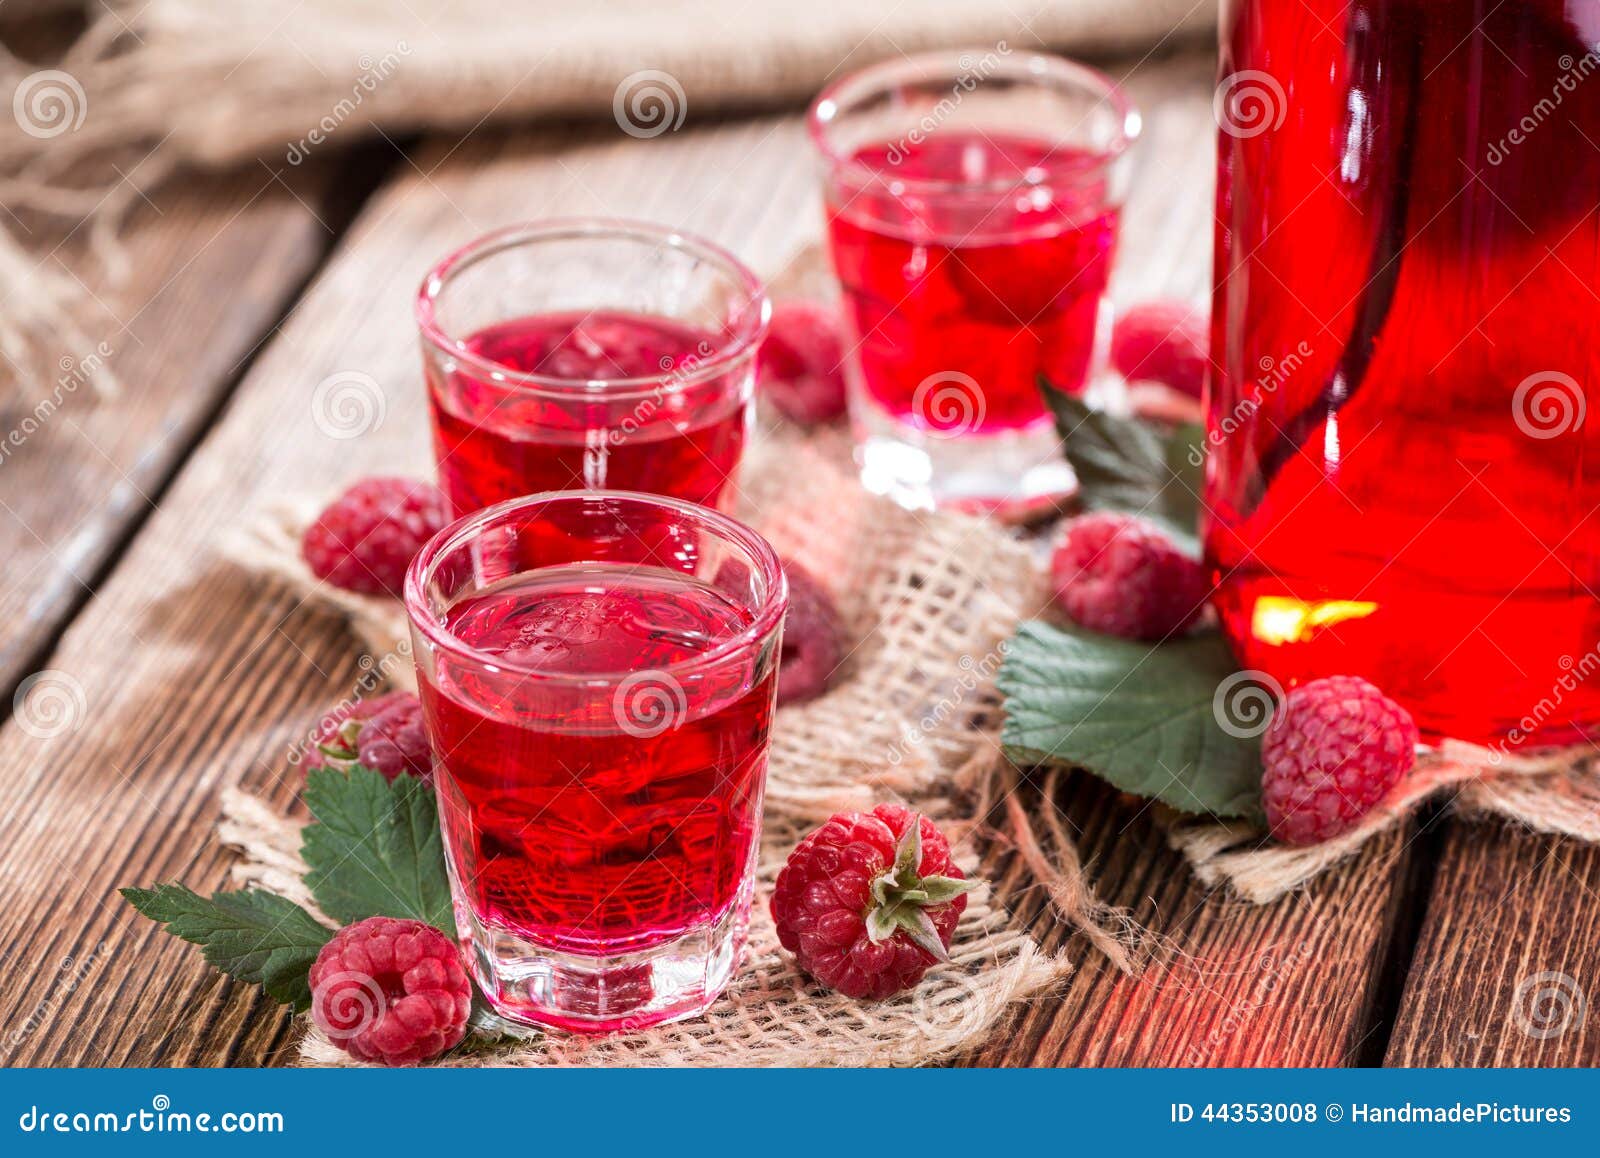 homemade raspberry liqueur